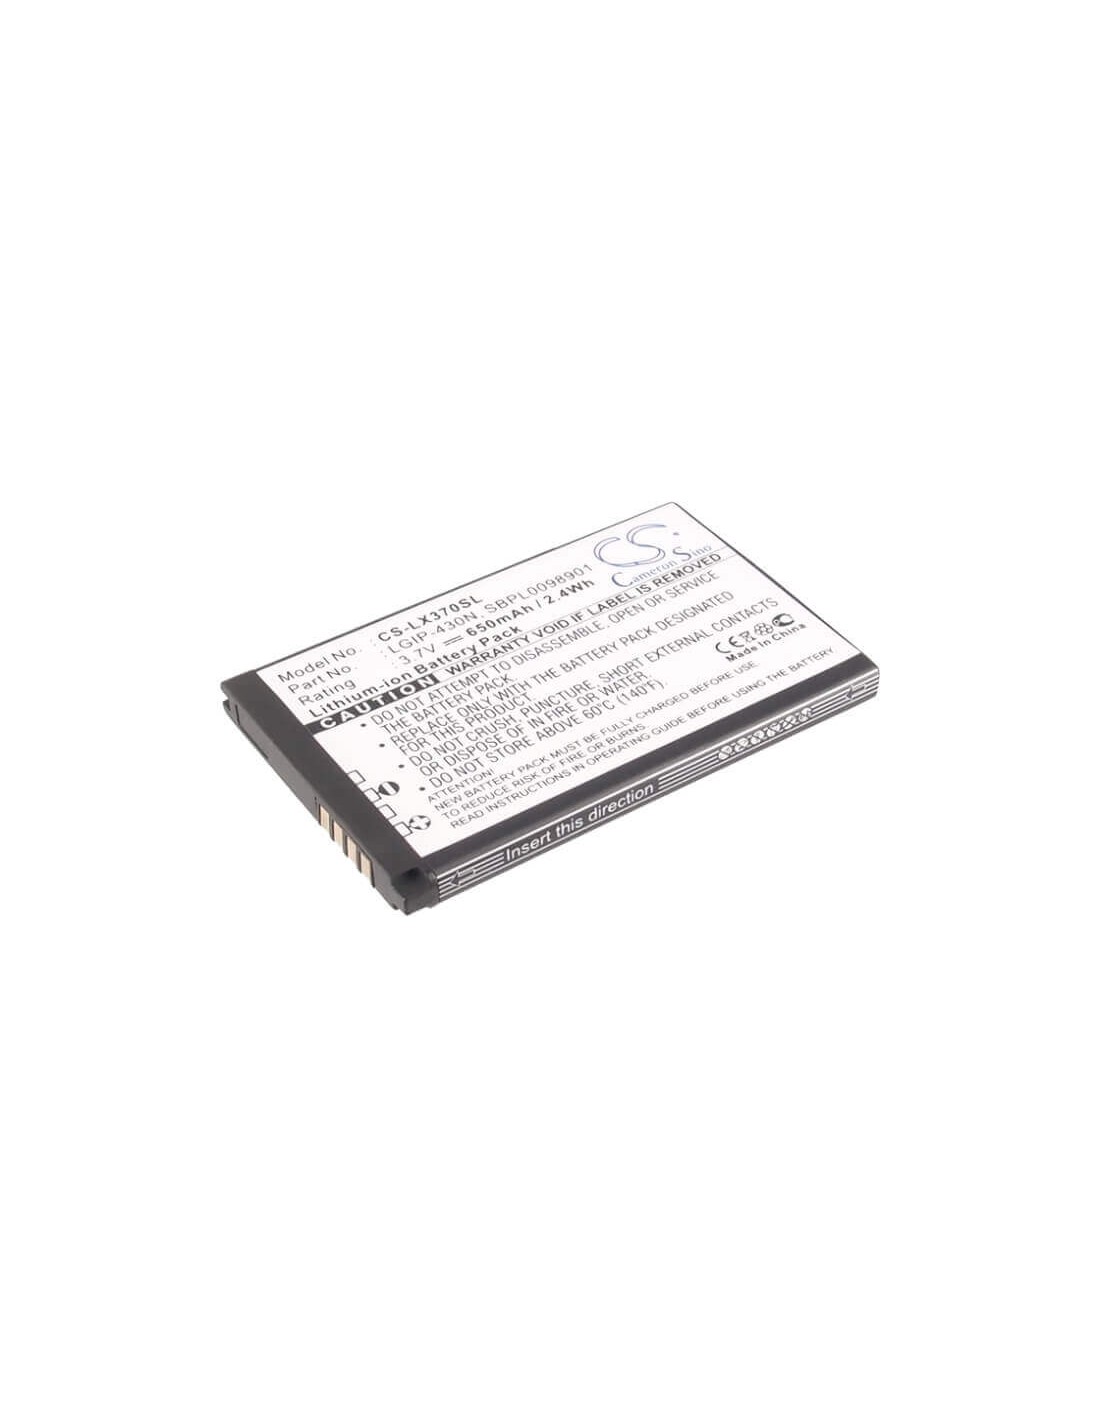 Battery for LG LX370, LX370 Slider, LX290 3.7V, 650mAh - 2.41Wh